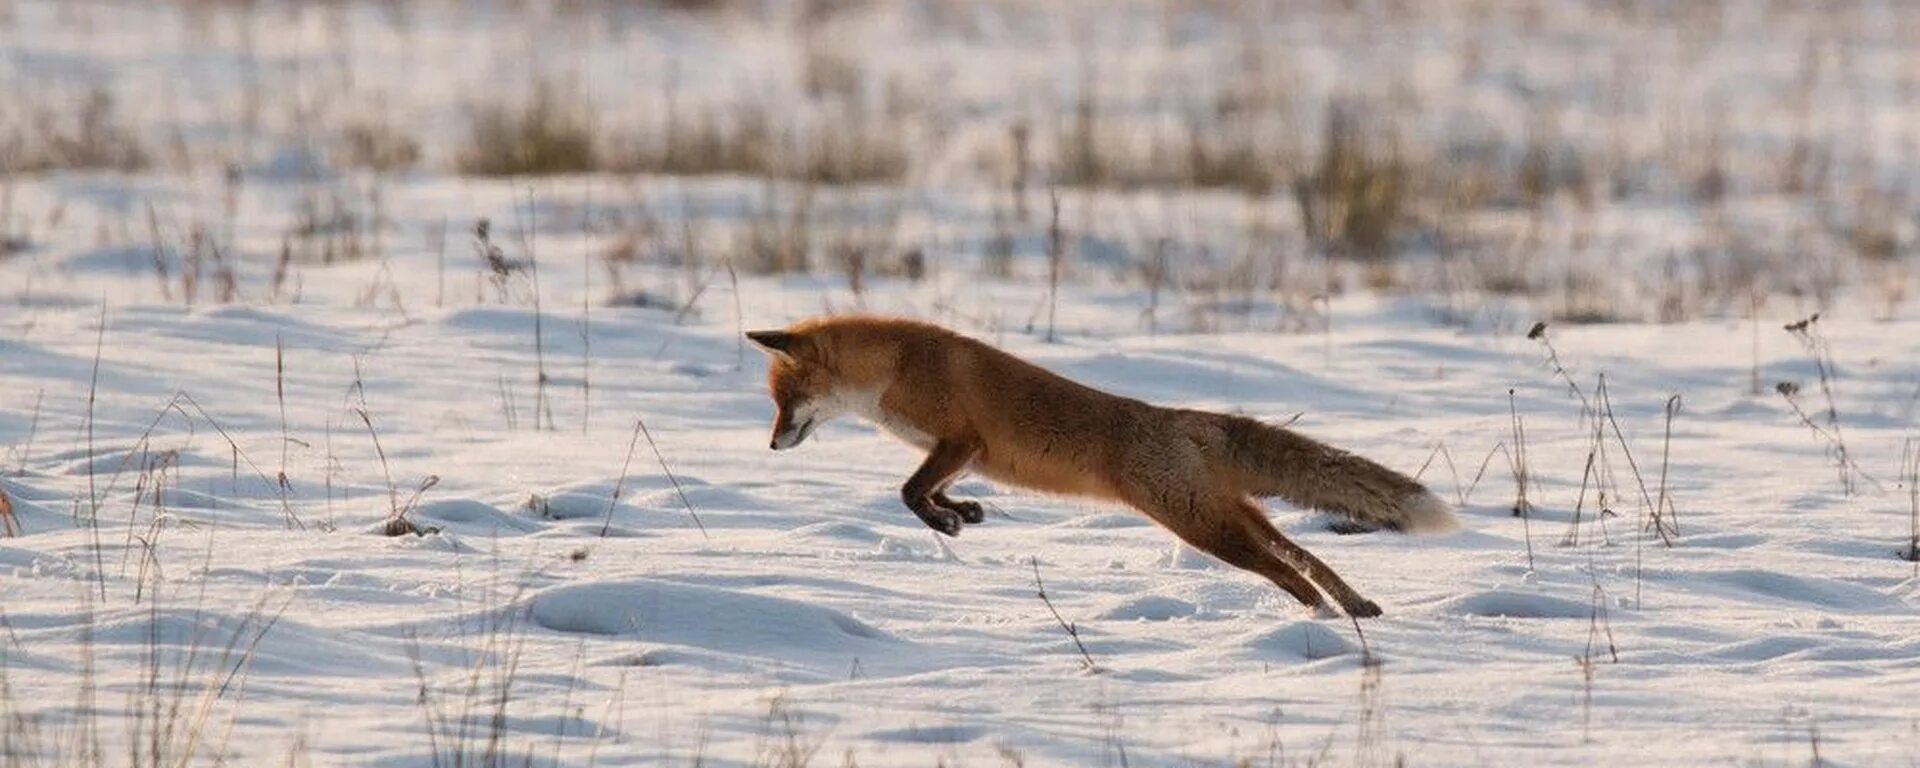 Лисица гонится за косулей скорость лисицы 11. Обыкновенная лисица мышкует. Мышкование лисы. Лиса охотится. Лиса на охоте.